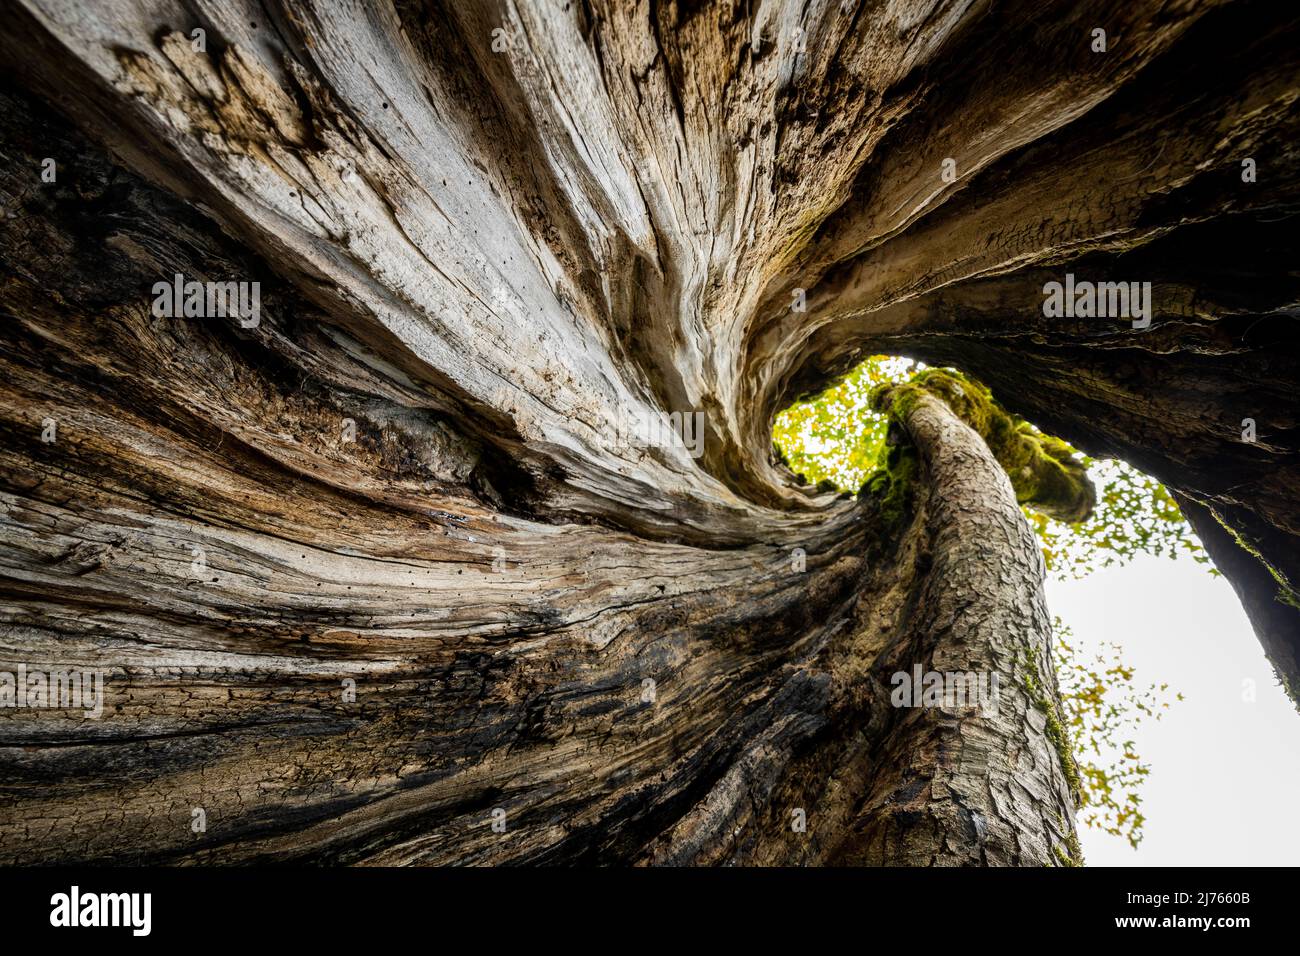 Ein ausgehöhlter alter Ahornbaum am großen Ahornboden im Karwendel, in den Alpen Österreichs, von innen fotografiert. Der verdrehte Stamm windet sich bis zur Baumkrone und zeigt wunderschön die Holzstruktur. Stockfoto